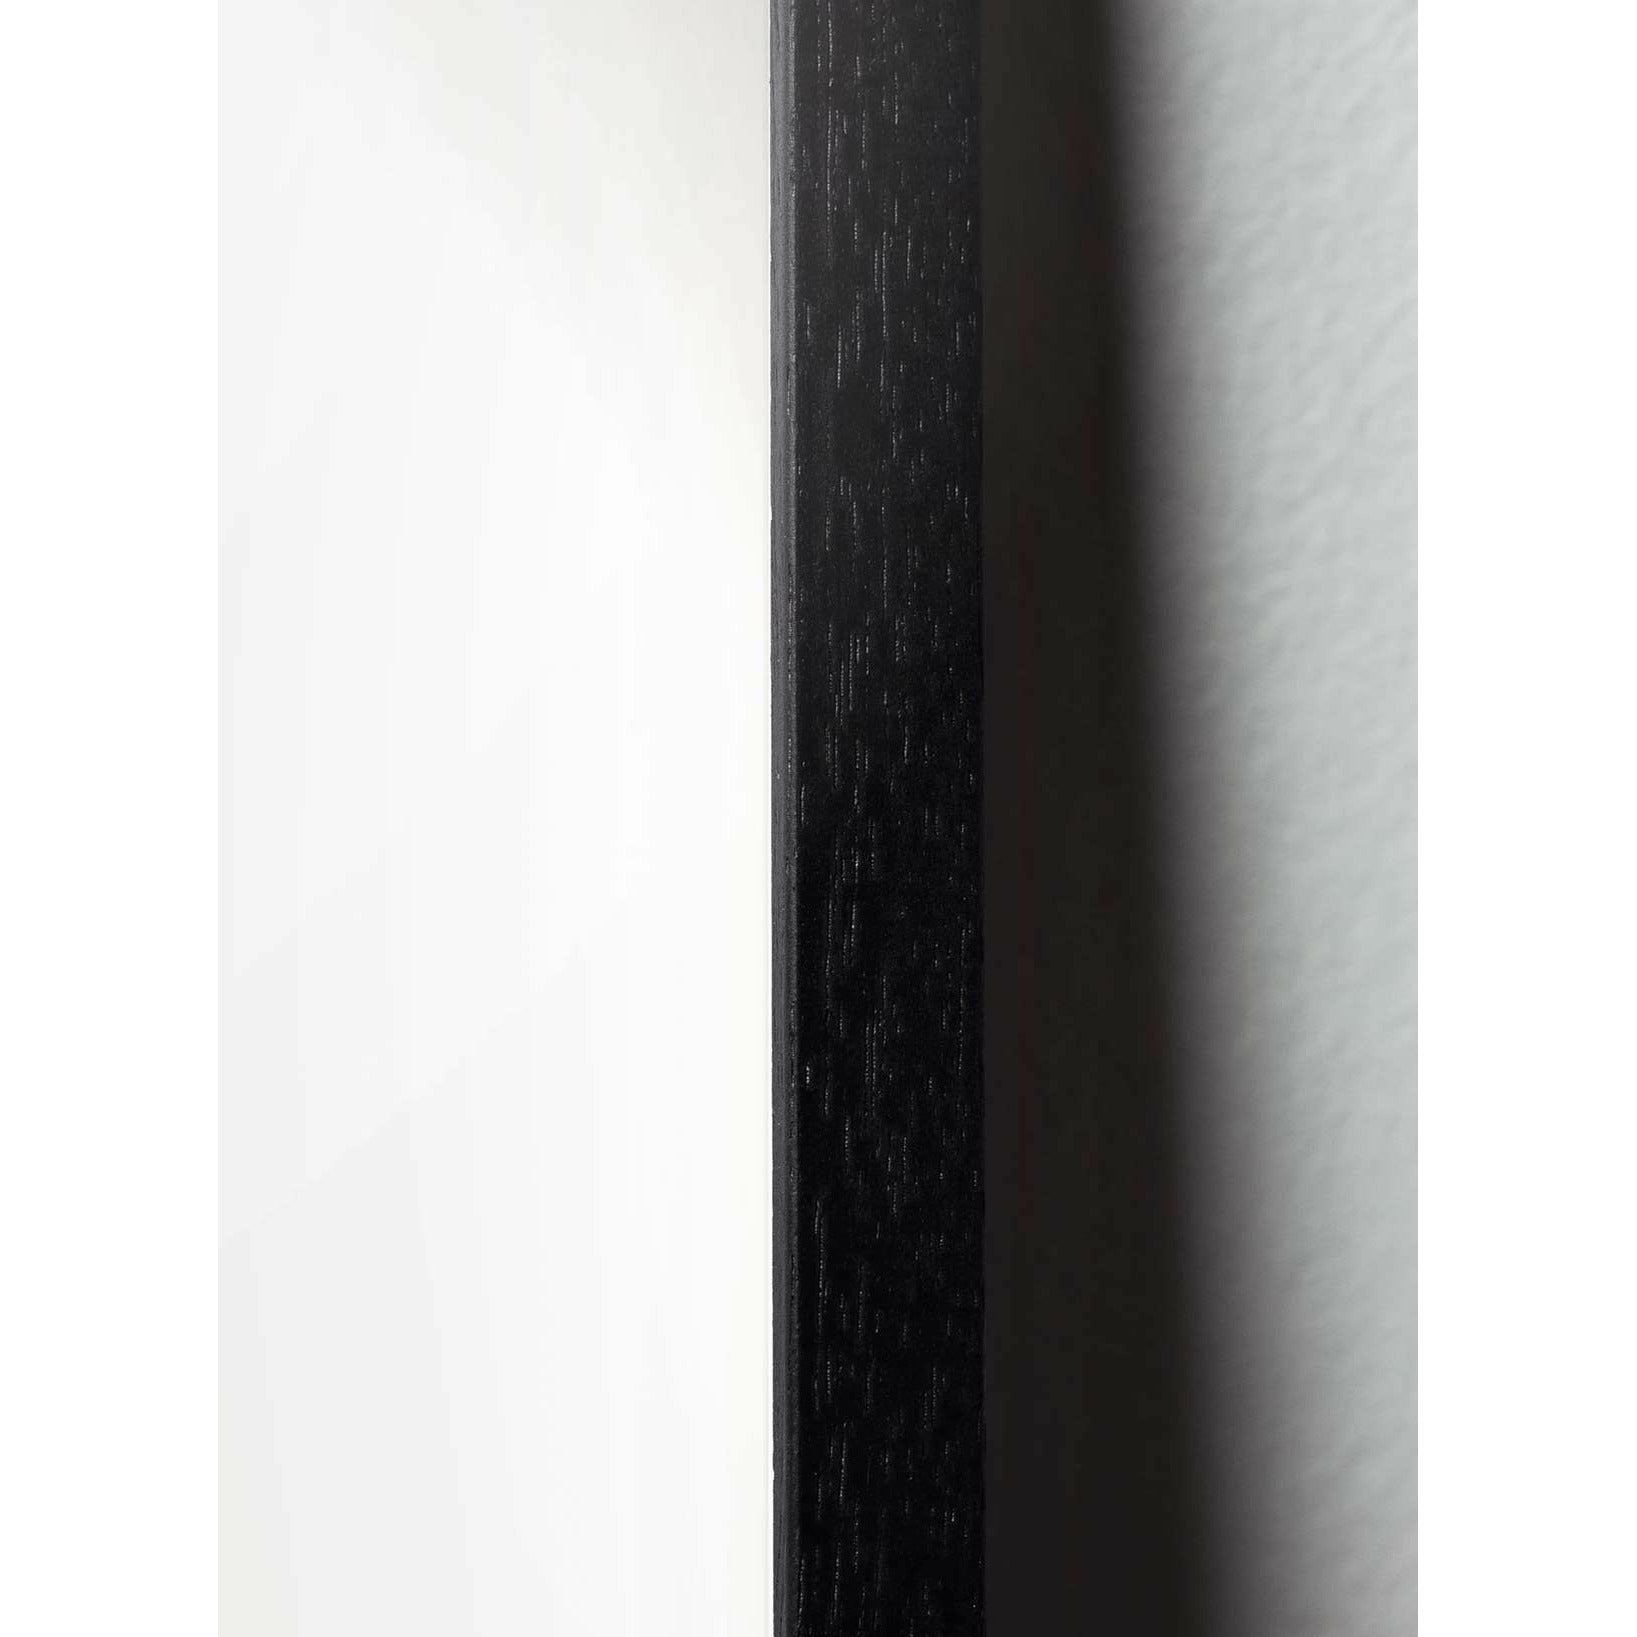 Pomysły plakat łabędzia, rama w czarnym lakierowanym drewnie 70 x 100 cm, białe tło